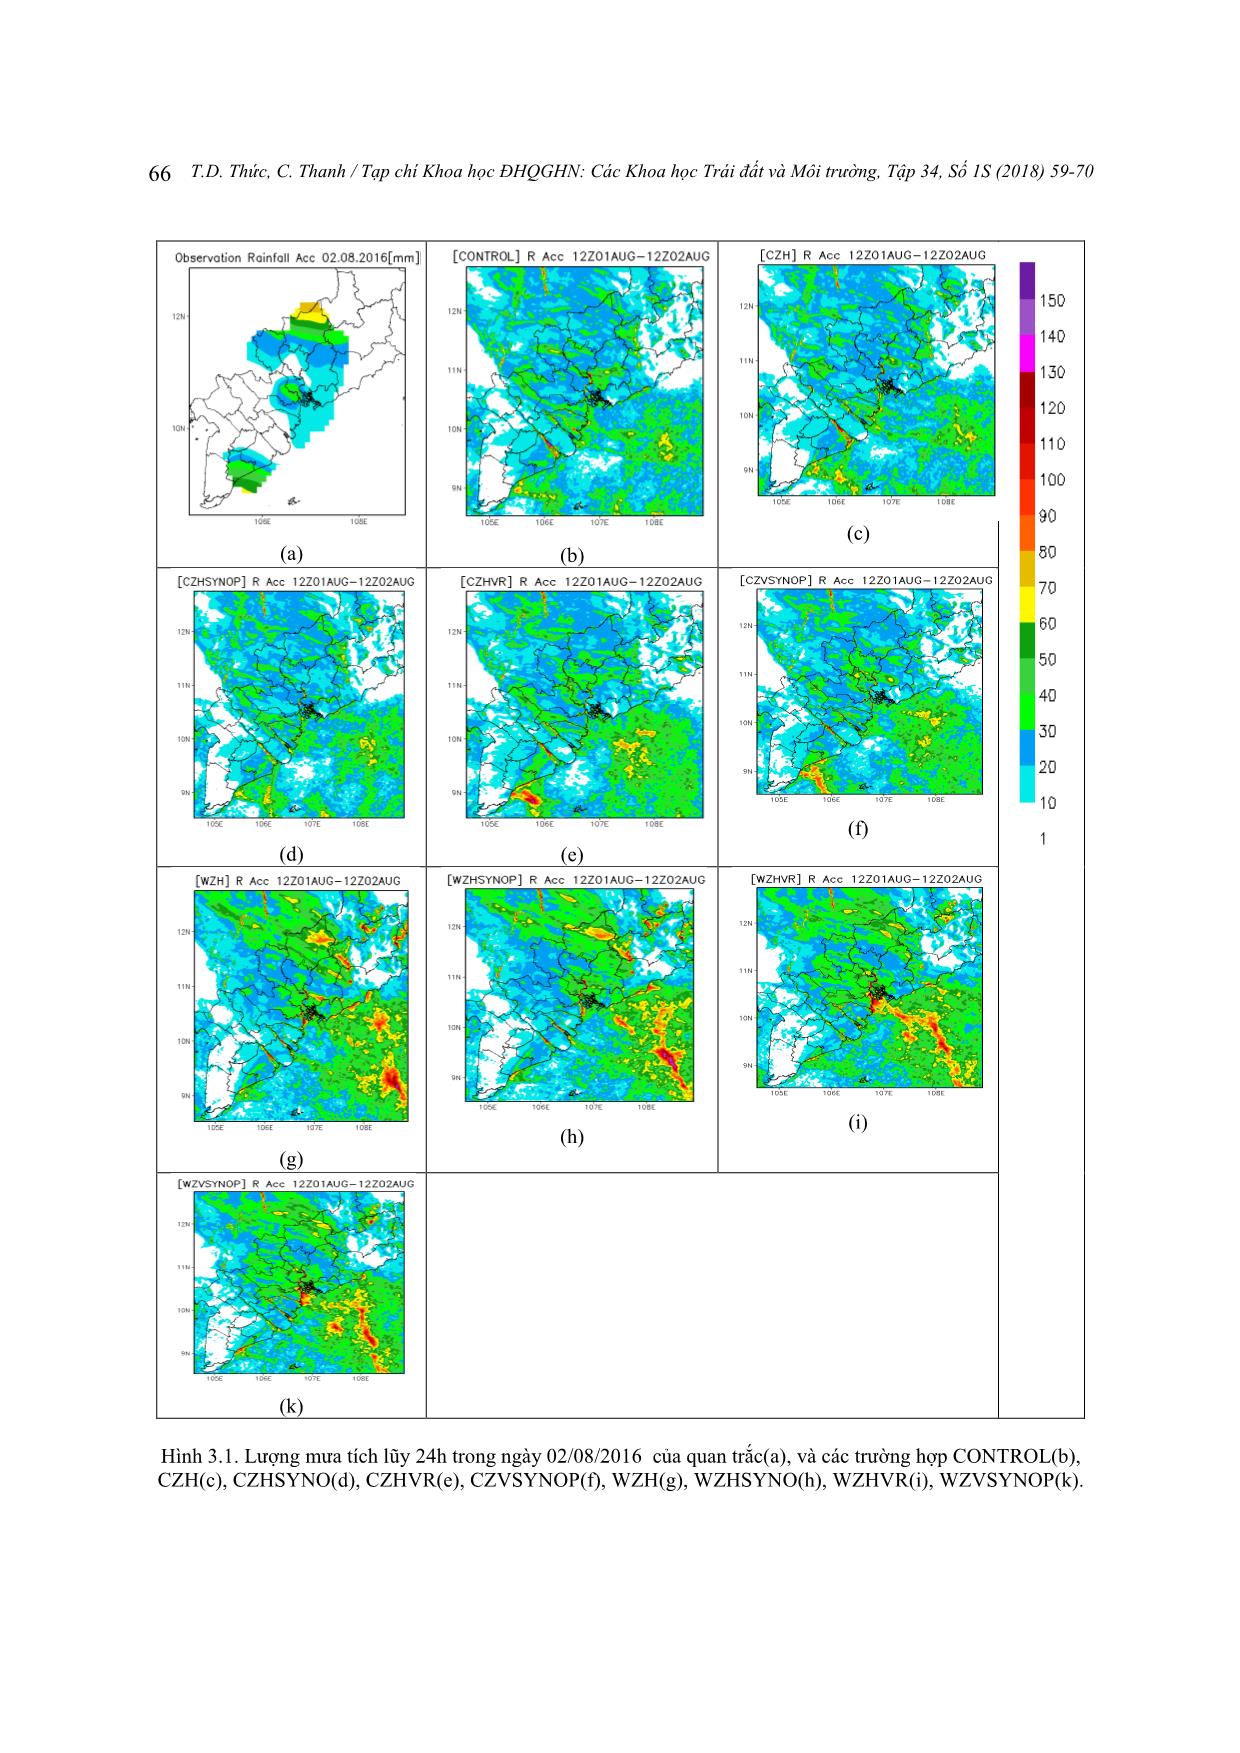 Thử nghiệm đồng hóa dữ liệu radar trong mô hình WRF để dự báo mưa lớn cho khu vực Thành phố Hồ Chí Minh trang 8